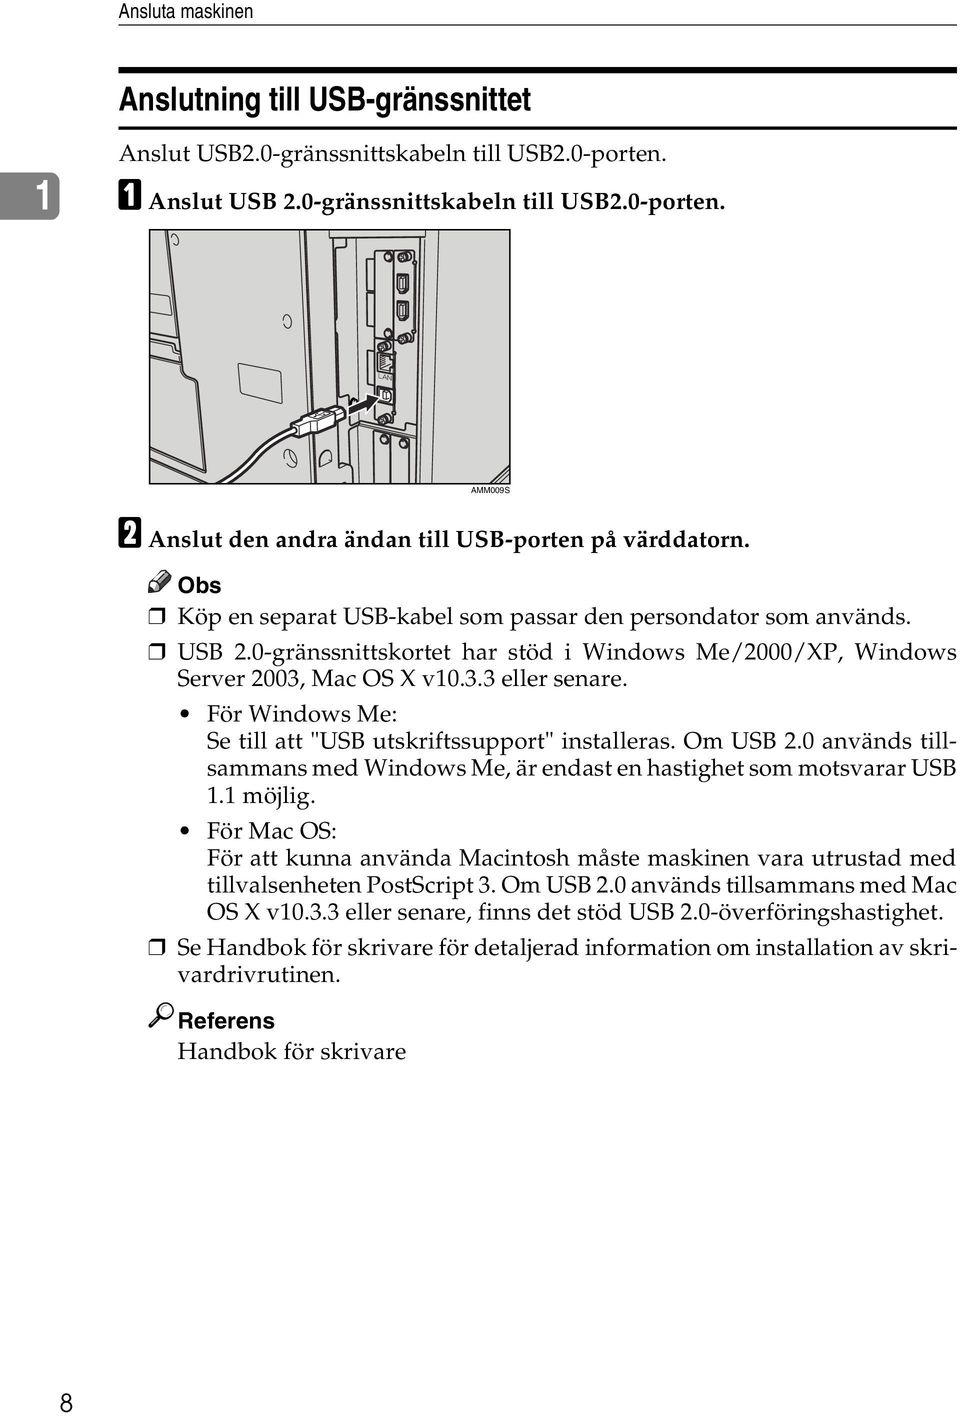 För Windows Me: Se till att "USB utskriftssupport" installeras. Om USB 2.0 används tillsammans med Windows Me, är endast en hastighet som motsvarar USB 1.1 möjlig.